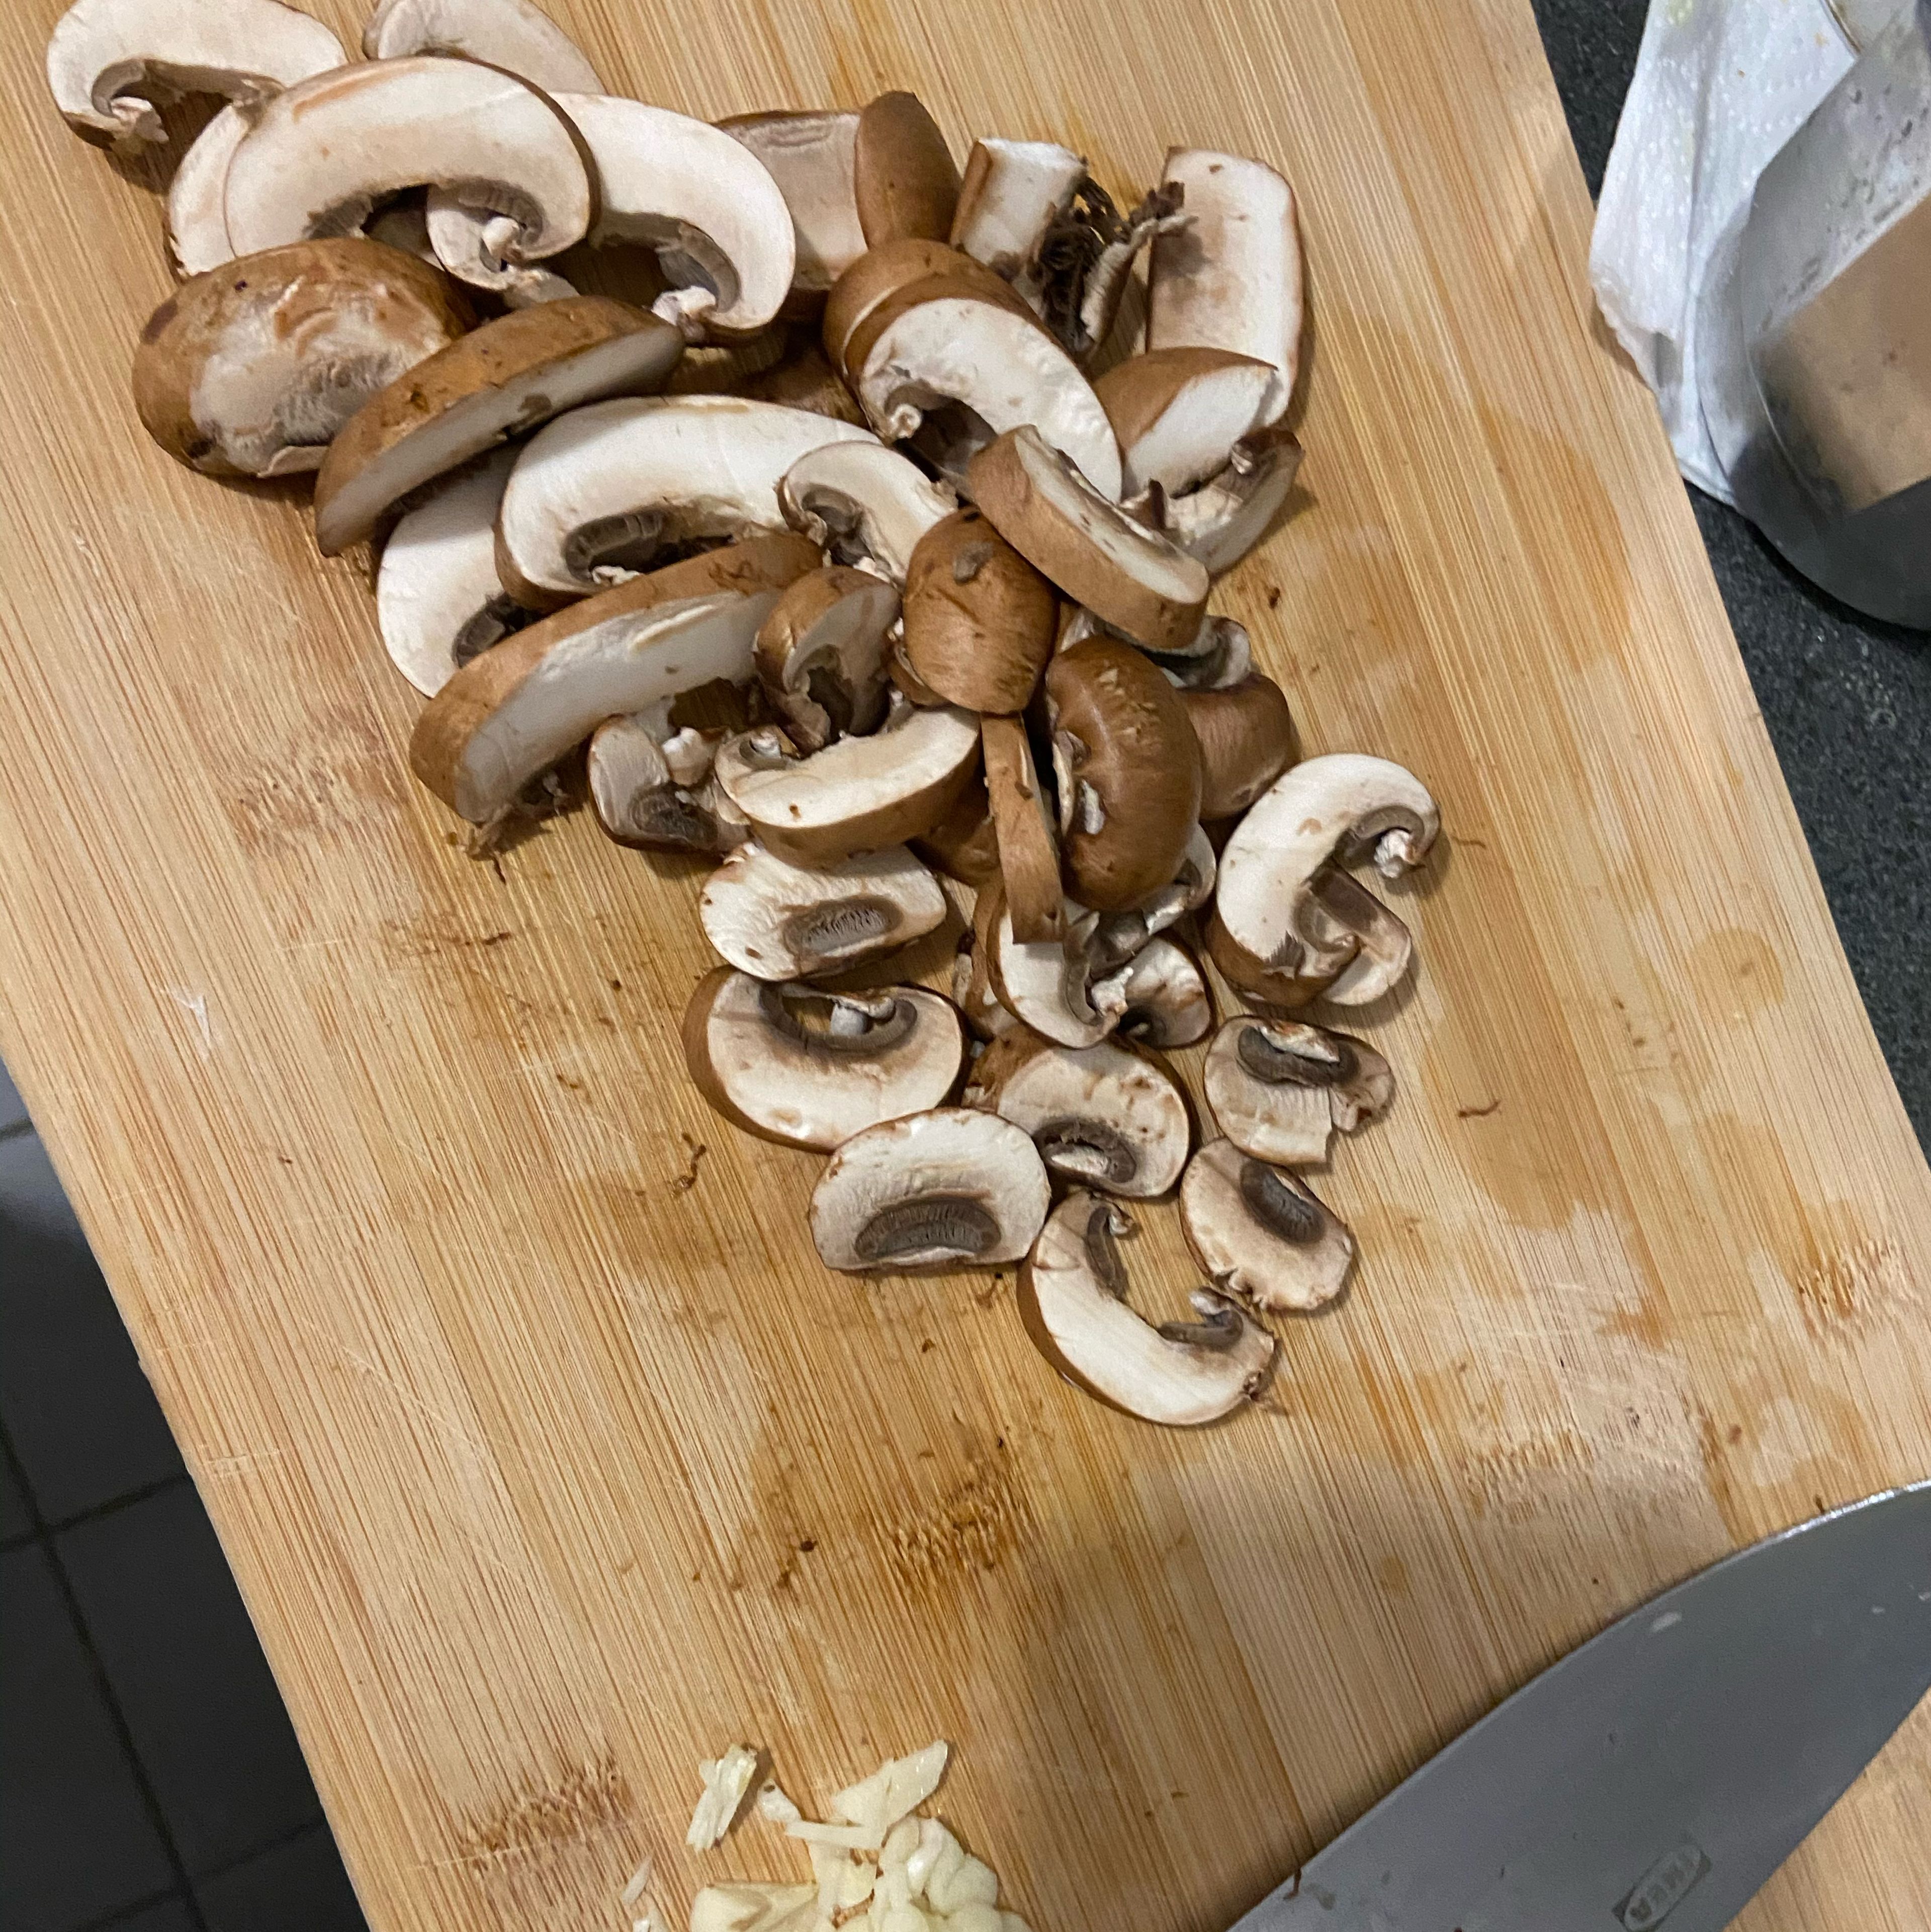 Cut mushrooms and garlic